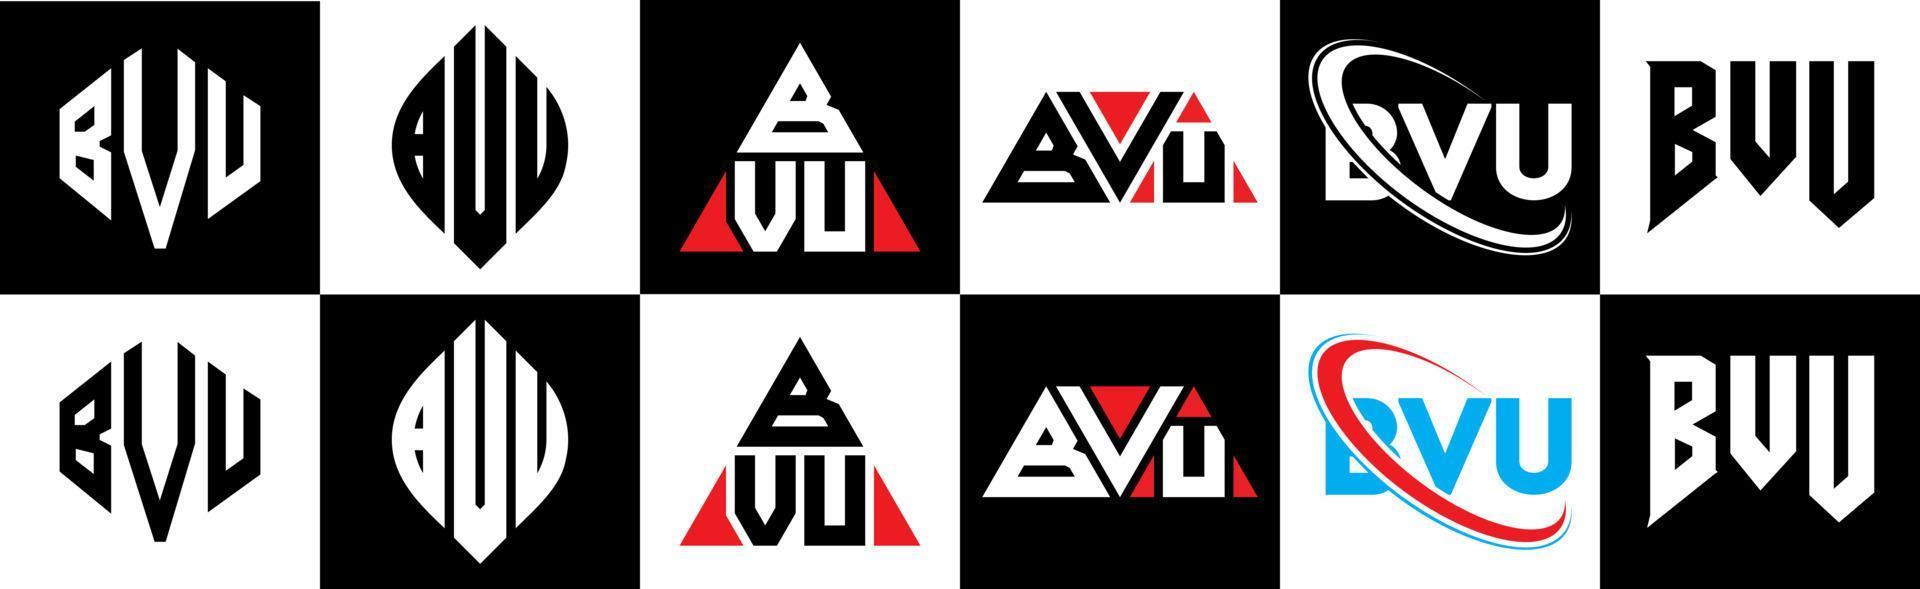 bvu-Buchstaben-Logo-Design in sechs Stilen. bvu Polygon, Kreis, Dreieck, Sechseck, flacher und einfacher Stil mit schwarz-weißem Buchstabenlogo in einer Zeichenfläche. bvu minimalistisches und klassisches Logo vektor